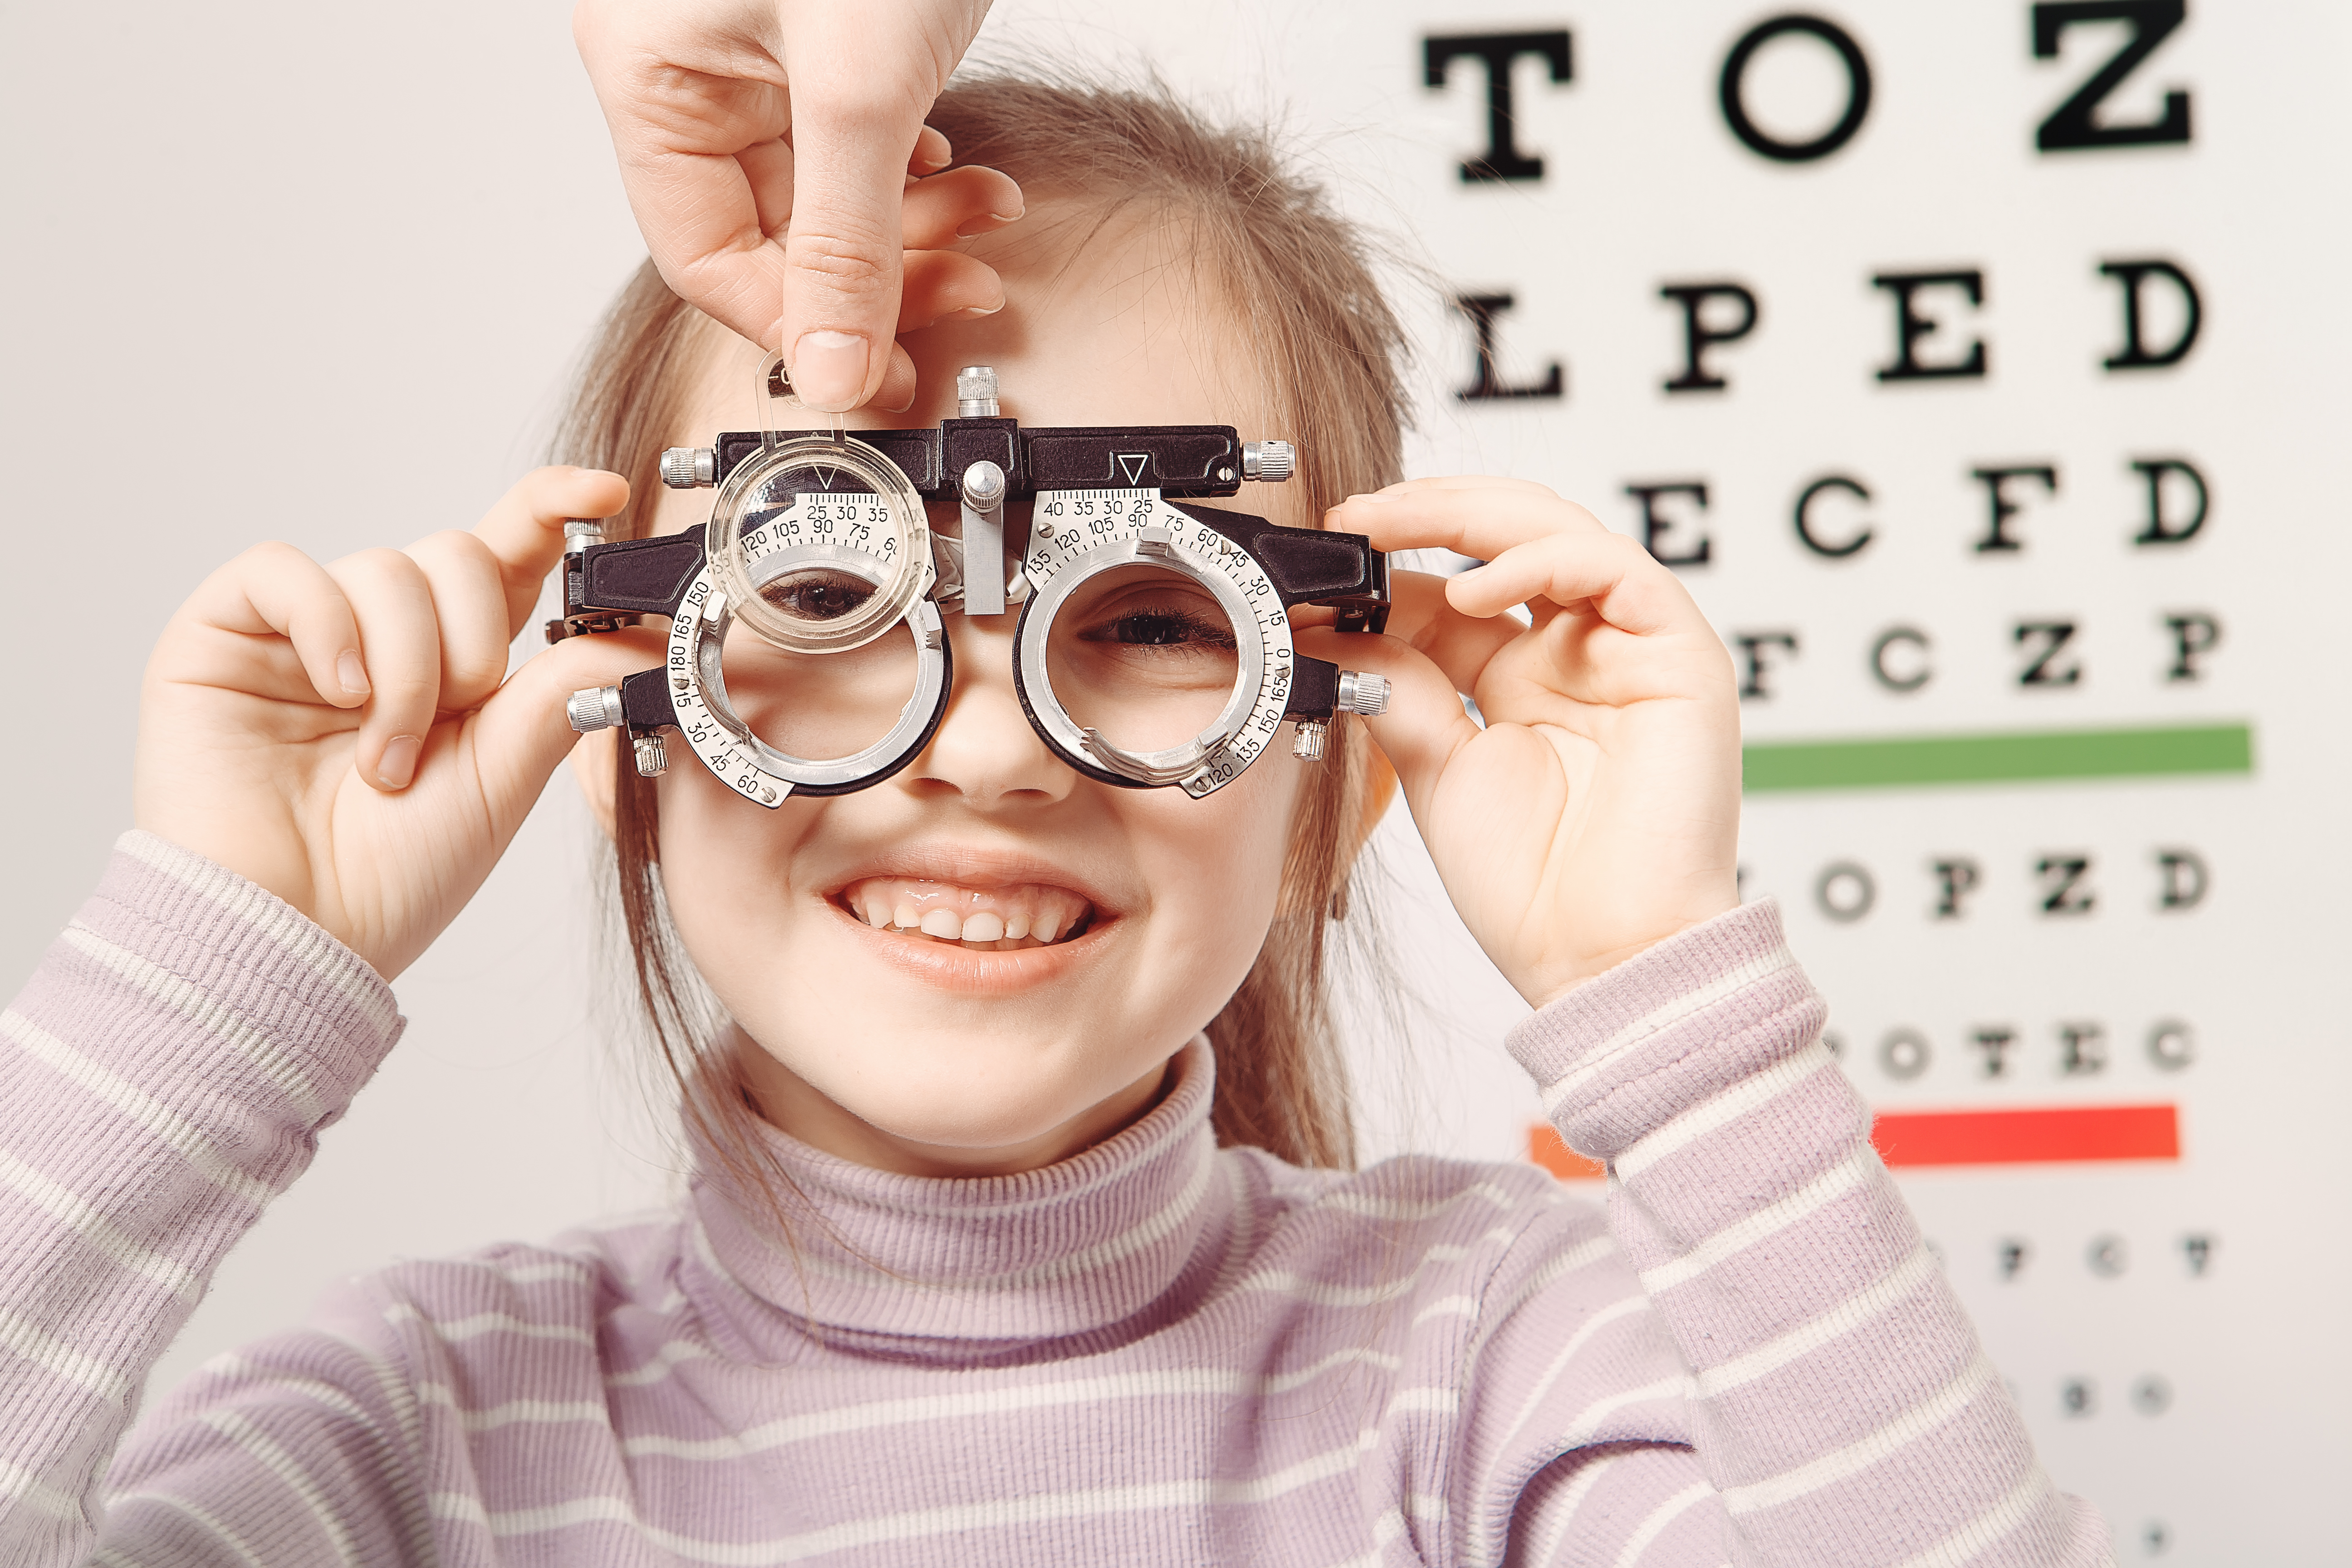 10 зрения у ребенка. Нарушение зрения. Дети с нарушением зрения. Дети в очках для зрения. Нарущения зренря умдетей.